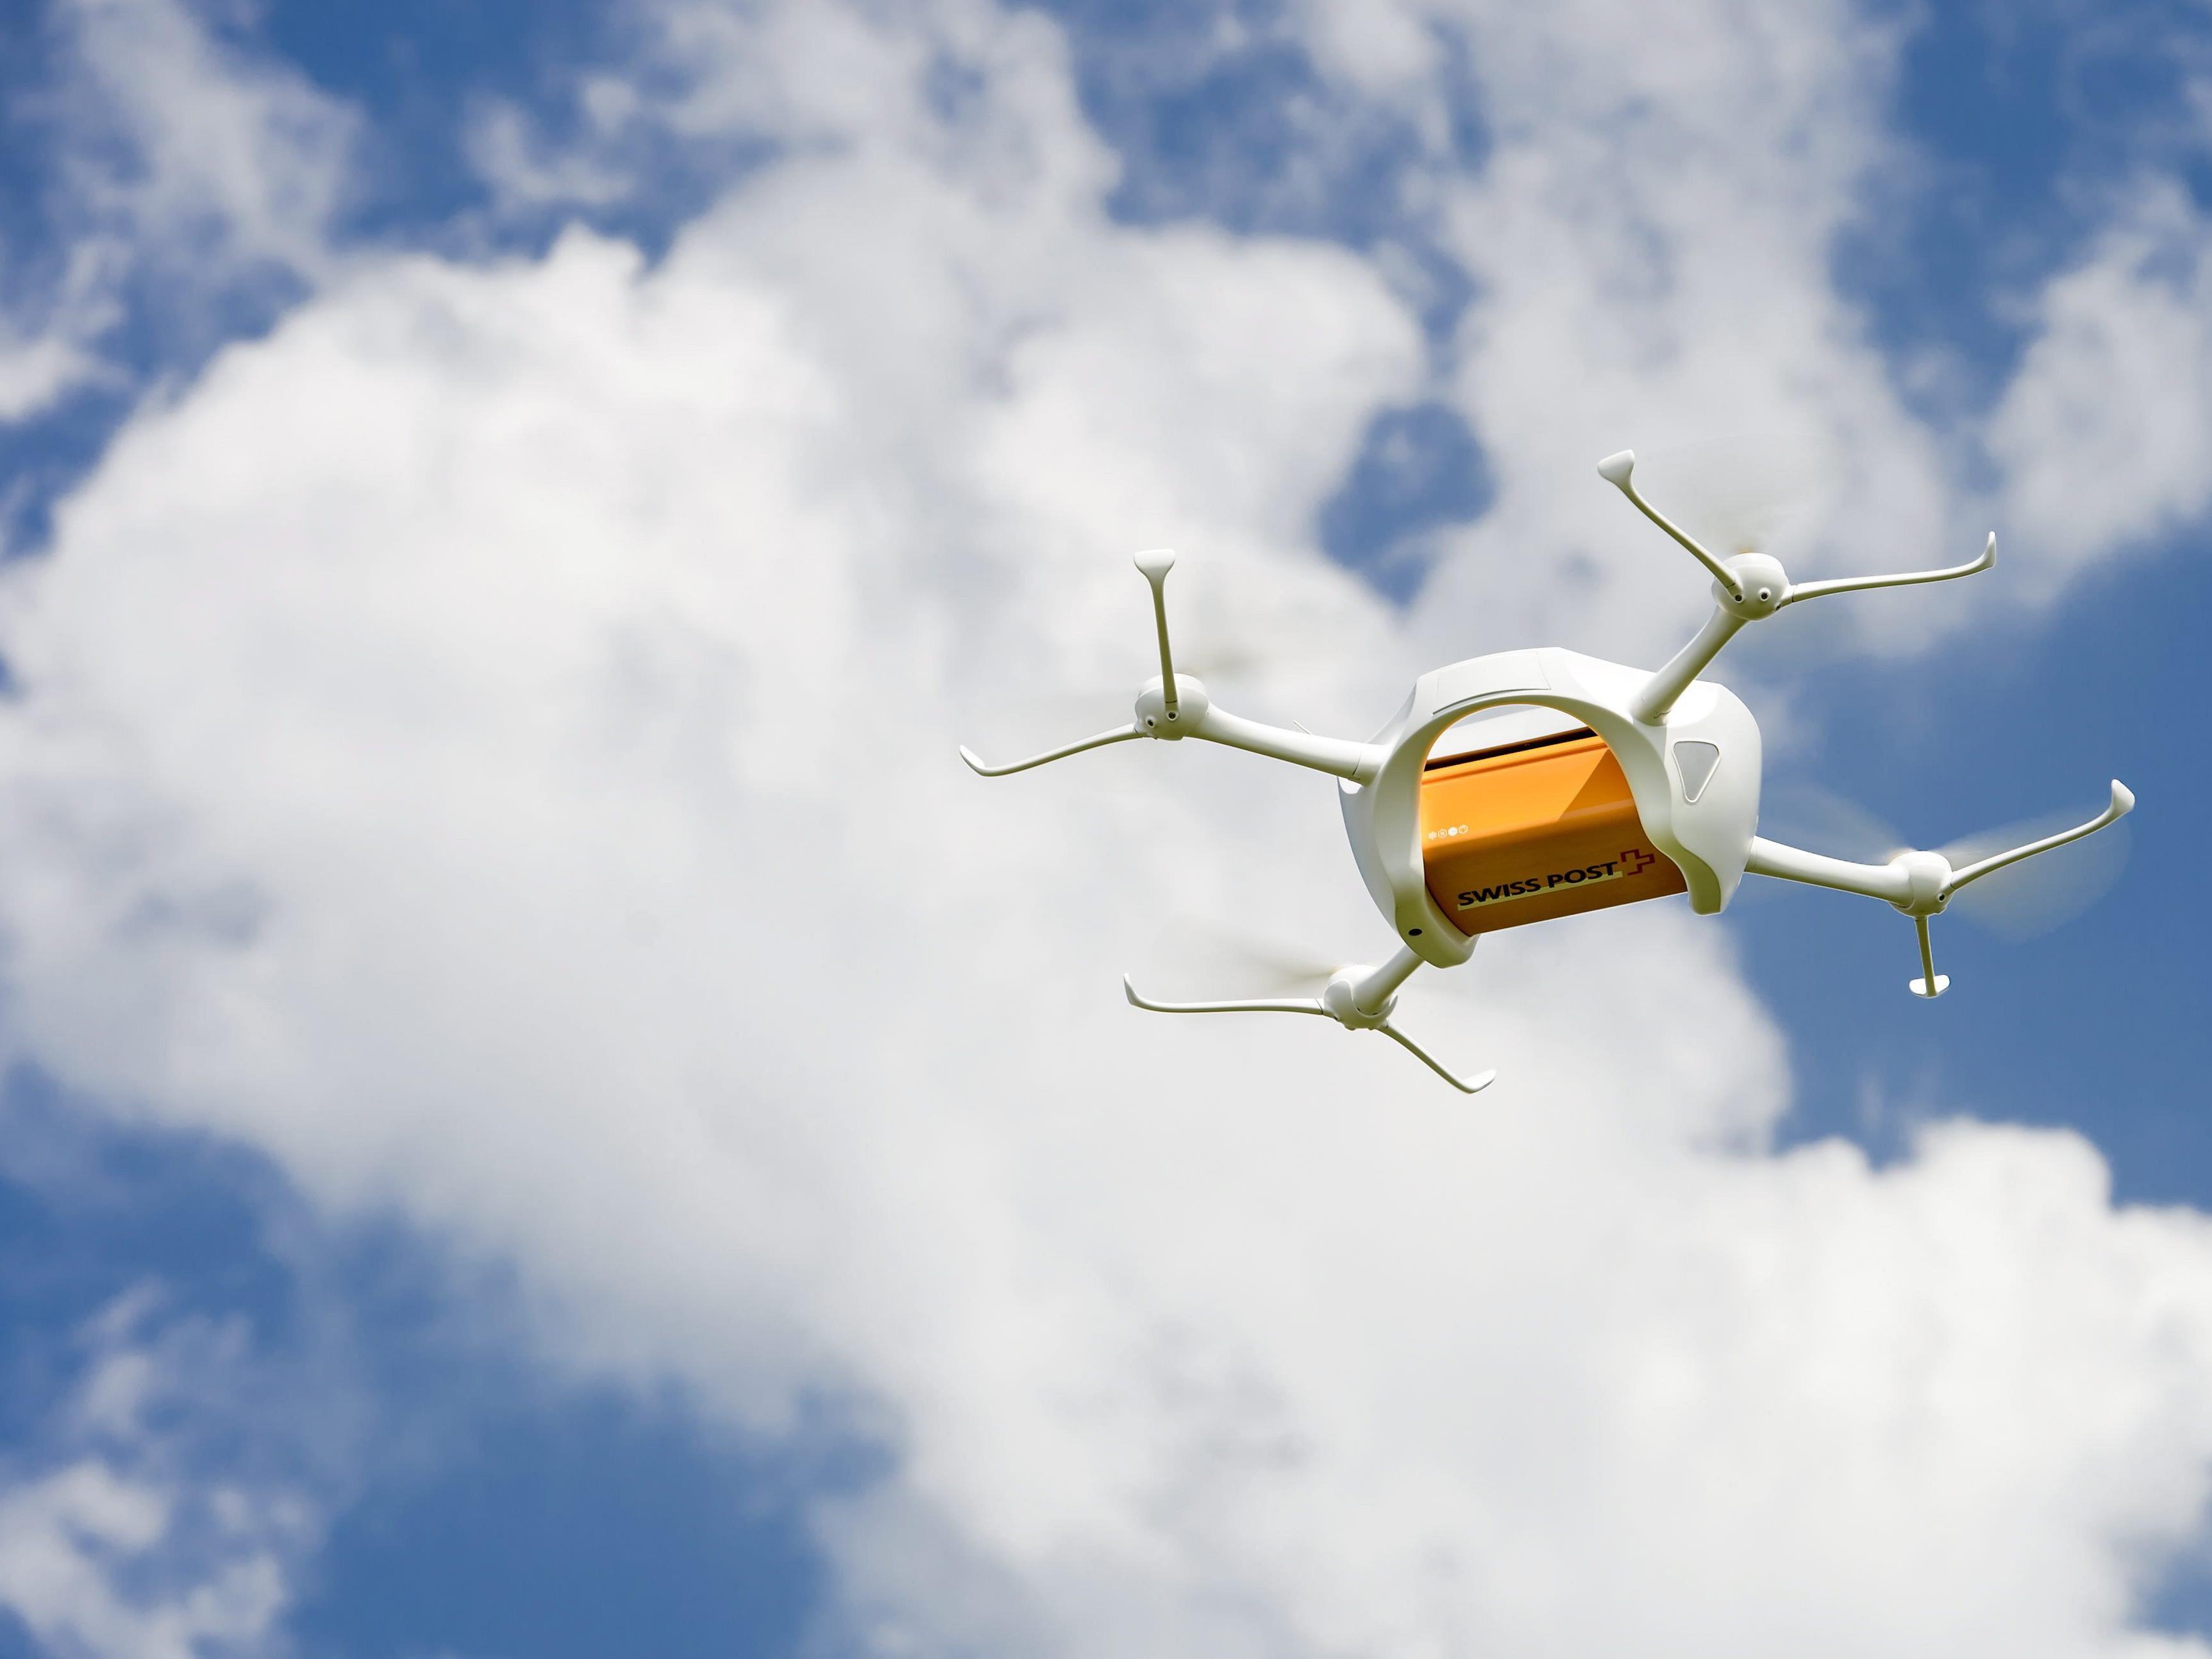 Schweizer Post: Breiter Einsatz von Drohnen "frühestens" in fünf Jahren